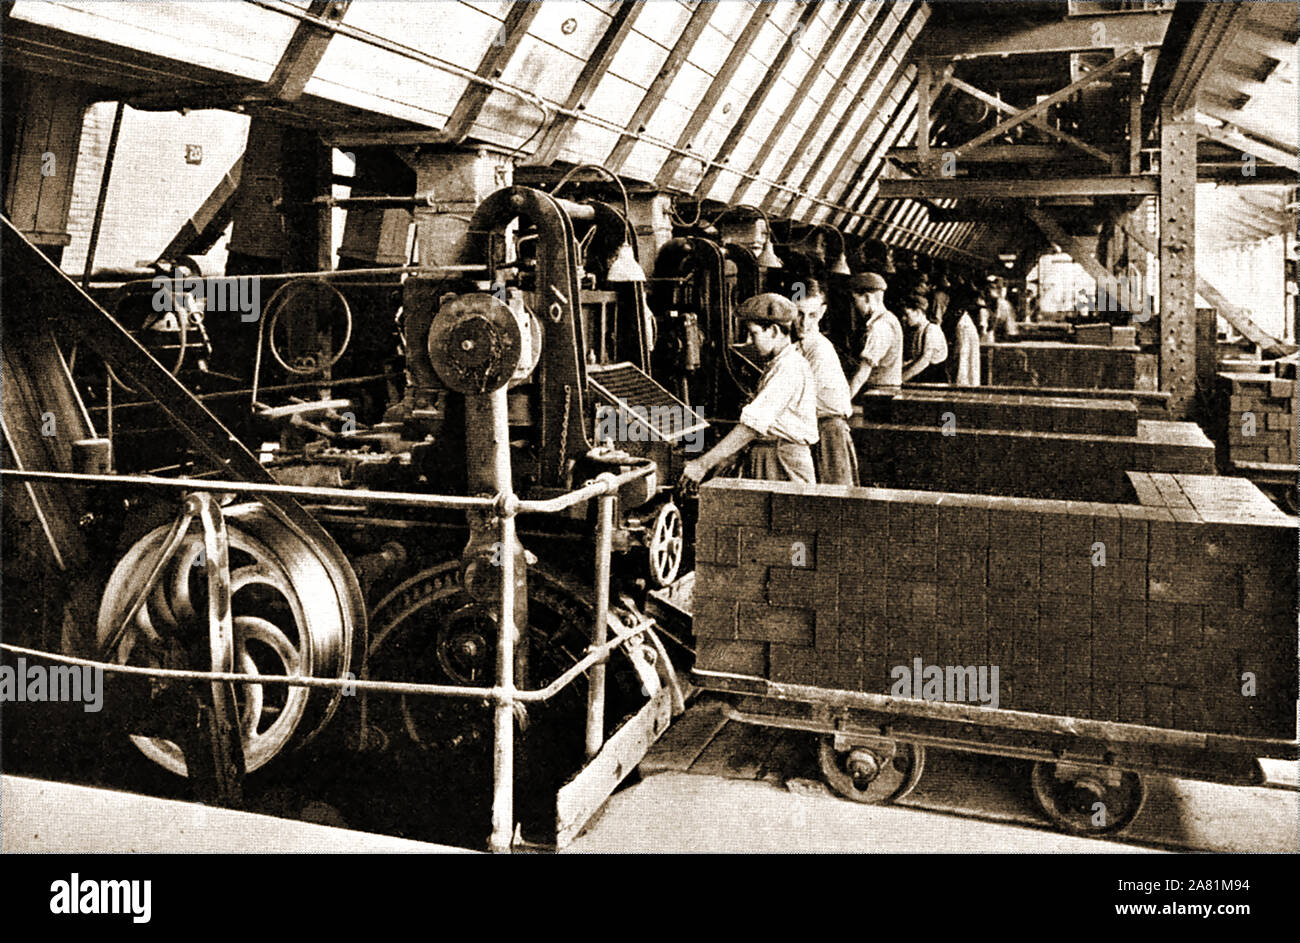 Un inizio di vintage fotografia scattata in fabbrica della London Brick Company, Regno Unito - (Inizio 1900). i giovani lavoratori sono visti caricamento 'Verde' mattoni (realizzato da abbassare Oxford clay ) dalla macchina di stampaggio su carrello pronto per la cottura nei forni. Foto Stock